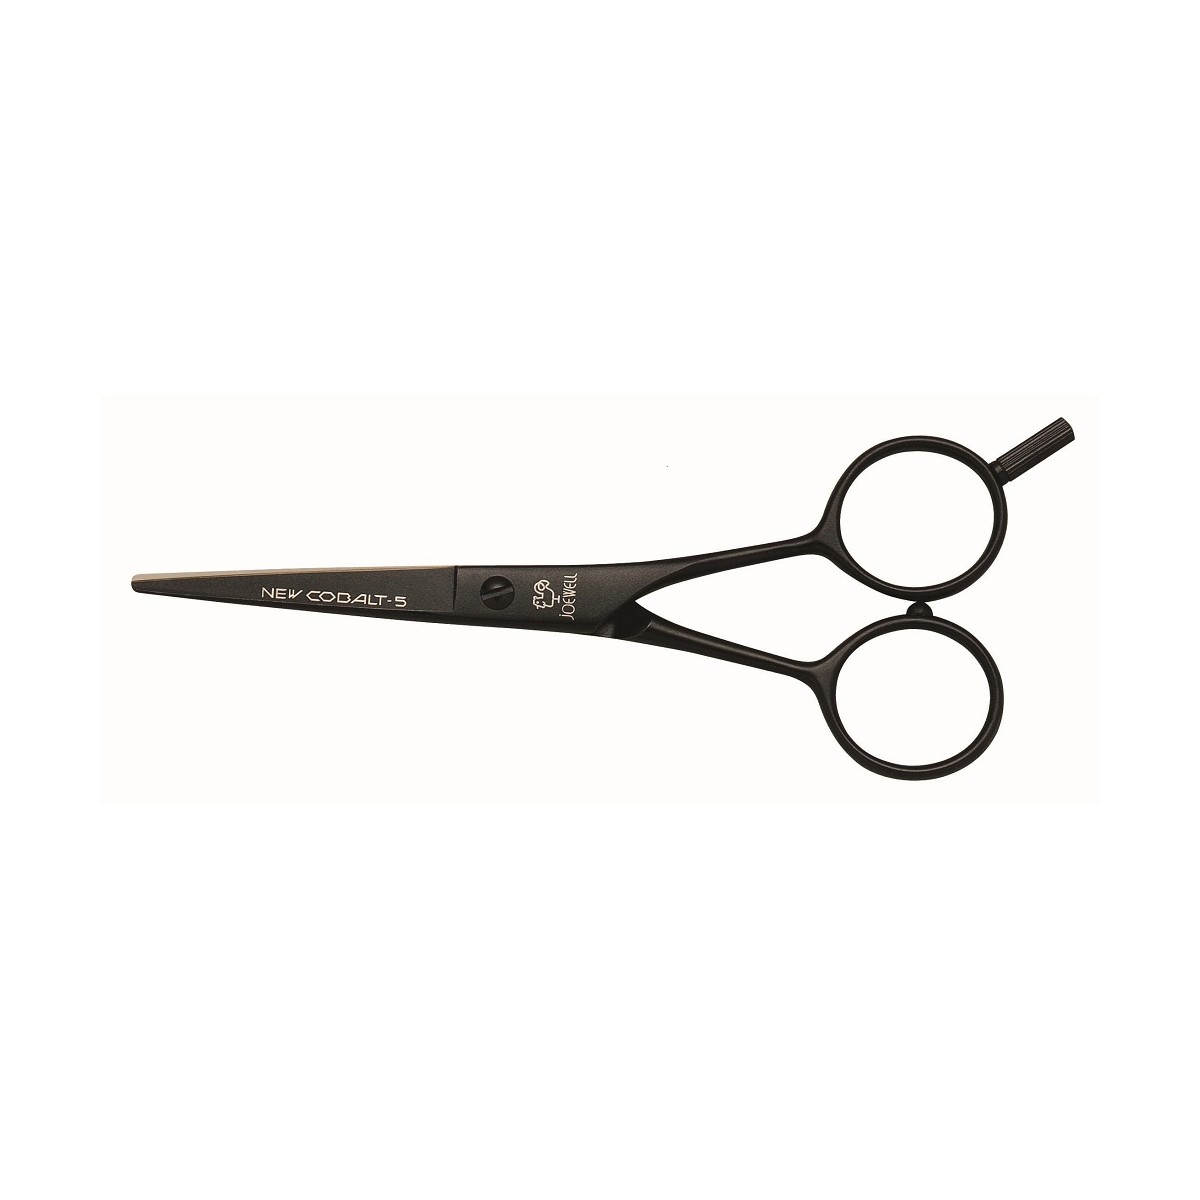 Hair Cutting Scissors Clip Art   Cliparts Co